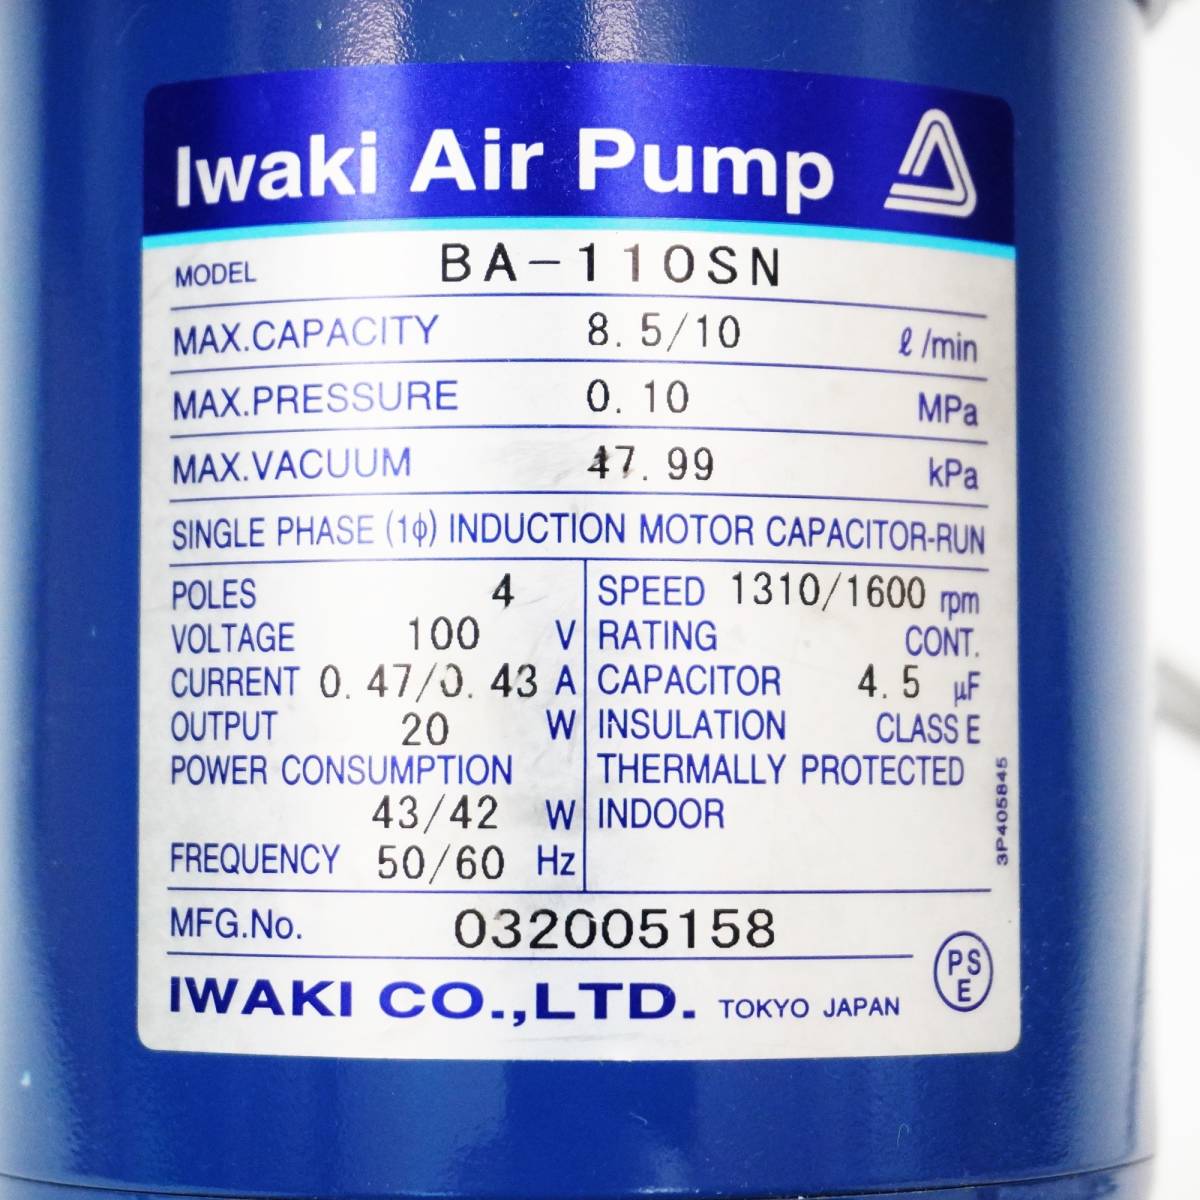 動作品 / イワキ ポンプ ベアーズ式 エアーポンプ BA-110SN 約3.4kg / Iwaki Air Pump / 中古品 【FLS2700-2】_画像3